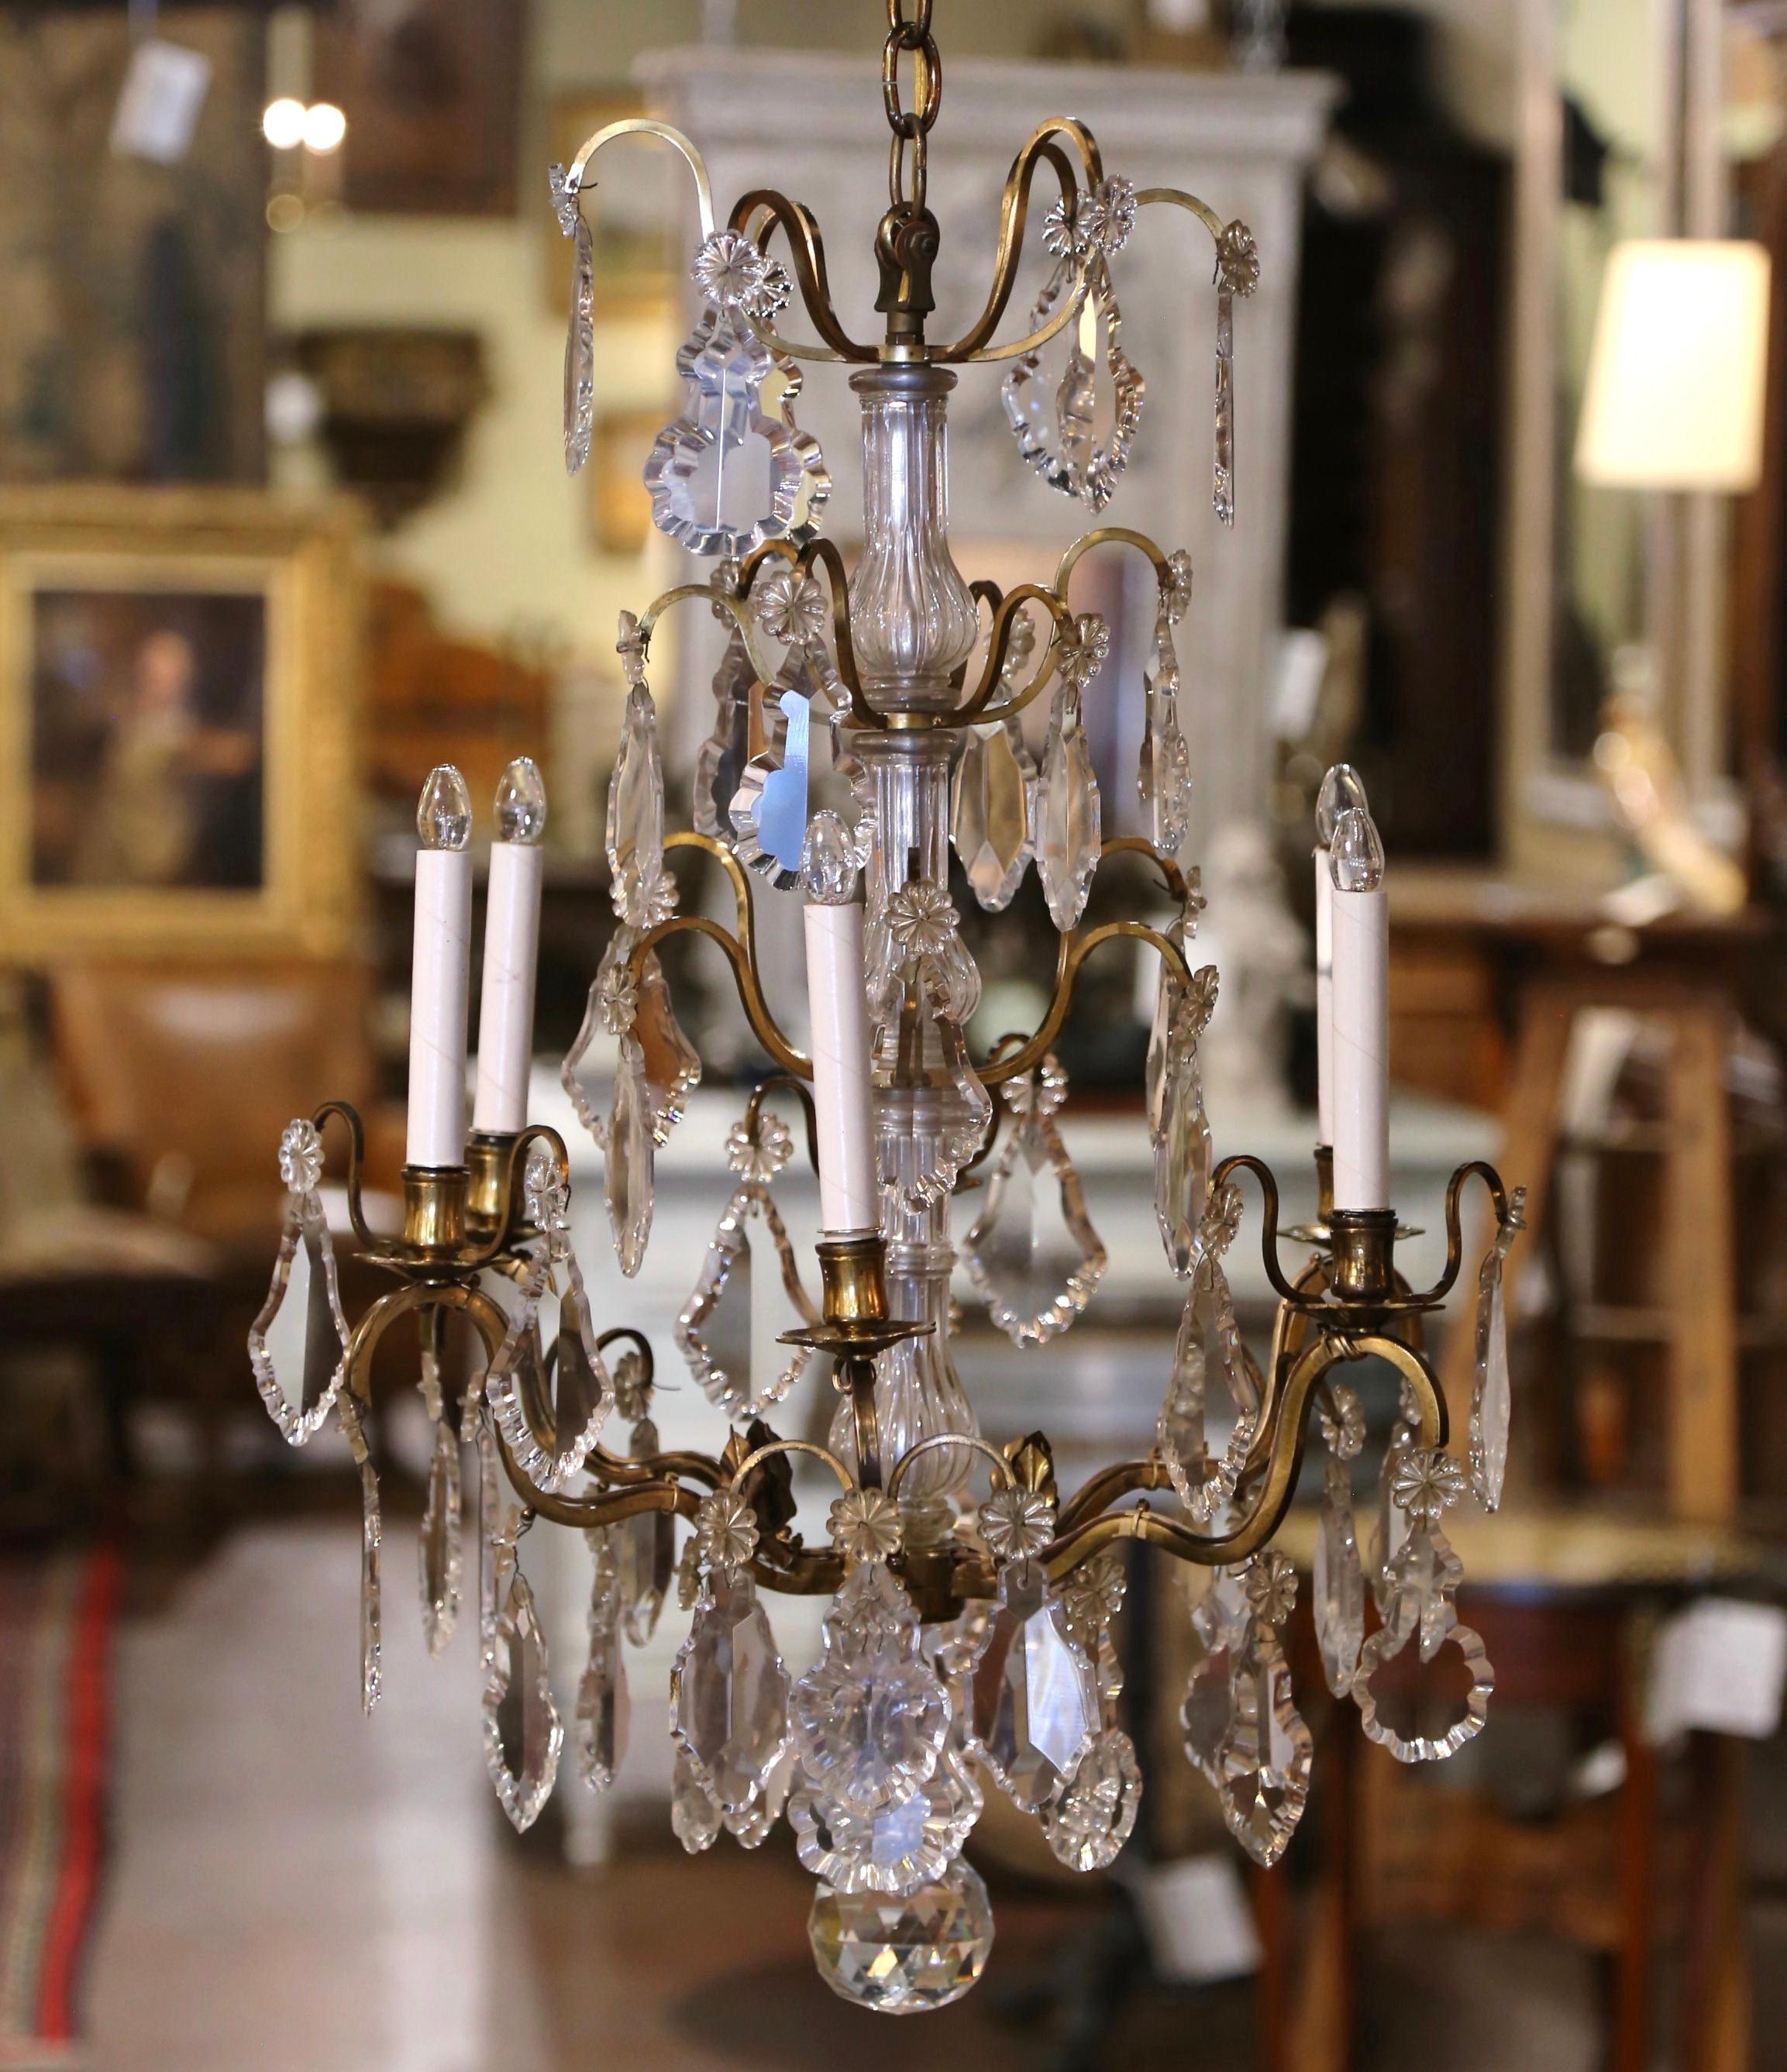 Cet élégant luminaire en cristal et bronze de style Baccarat a été créé en France, vers 1870. Le lustre antique complexe comporte six lumières nouvellement câblées sur un seul niveau, avec de luxueuses guirlandes de cristal taillé et des pendentifs